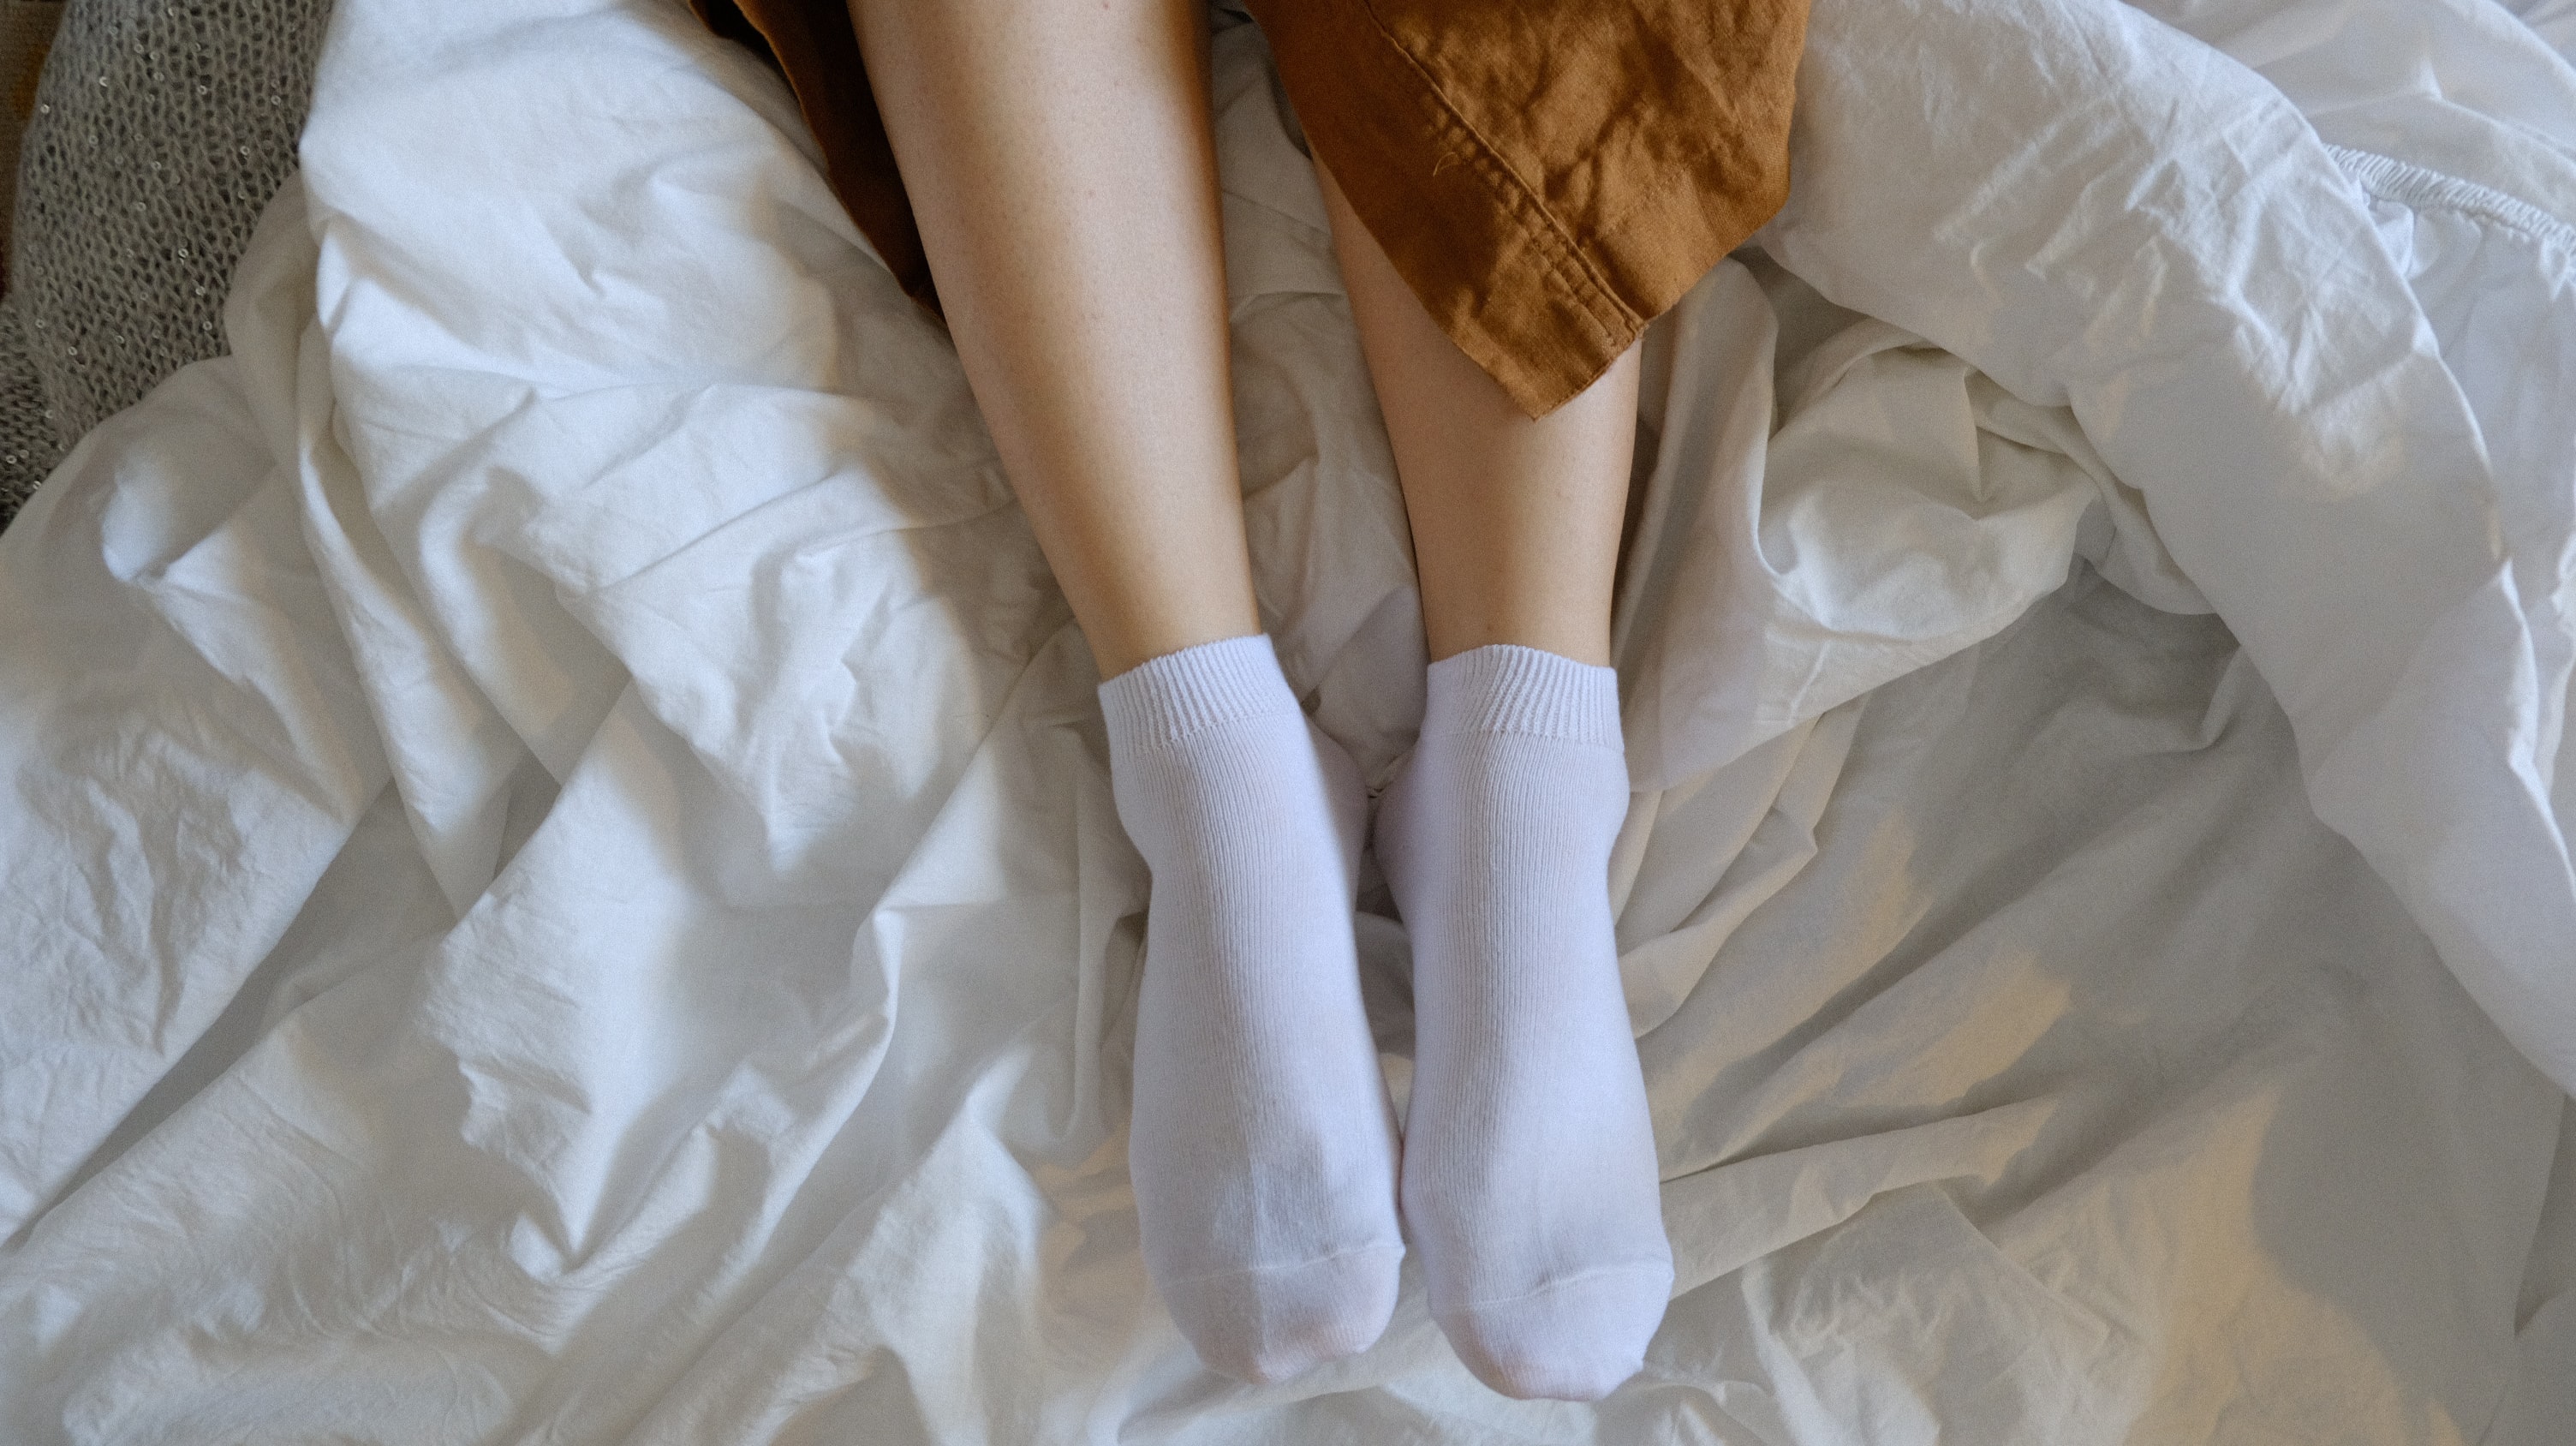 Ношенные носочки. Ножки в носочках. Женские ножки в носочках. Женские ножки в белых носочках. Белые носочки.